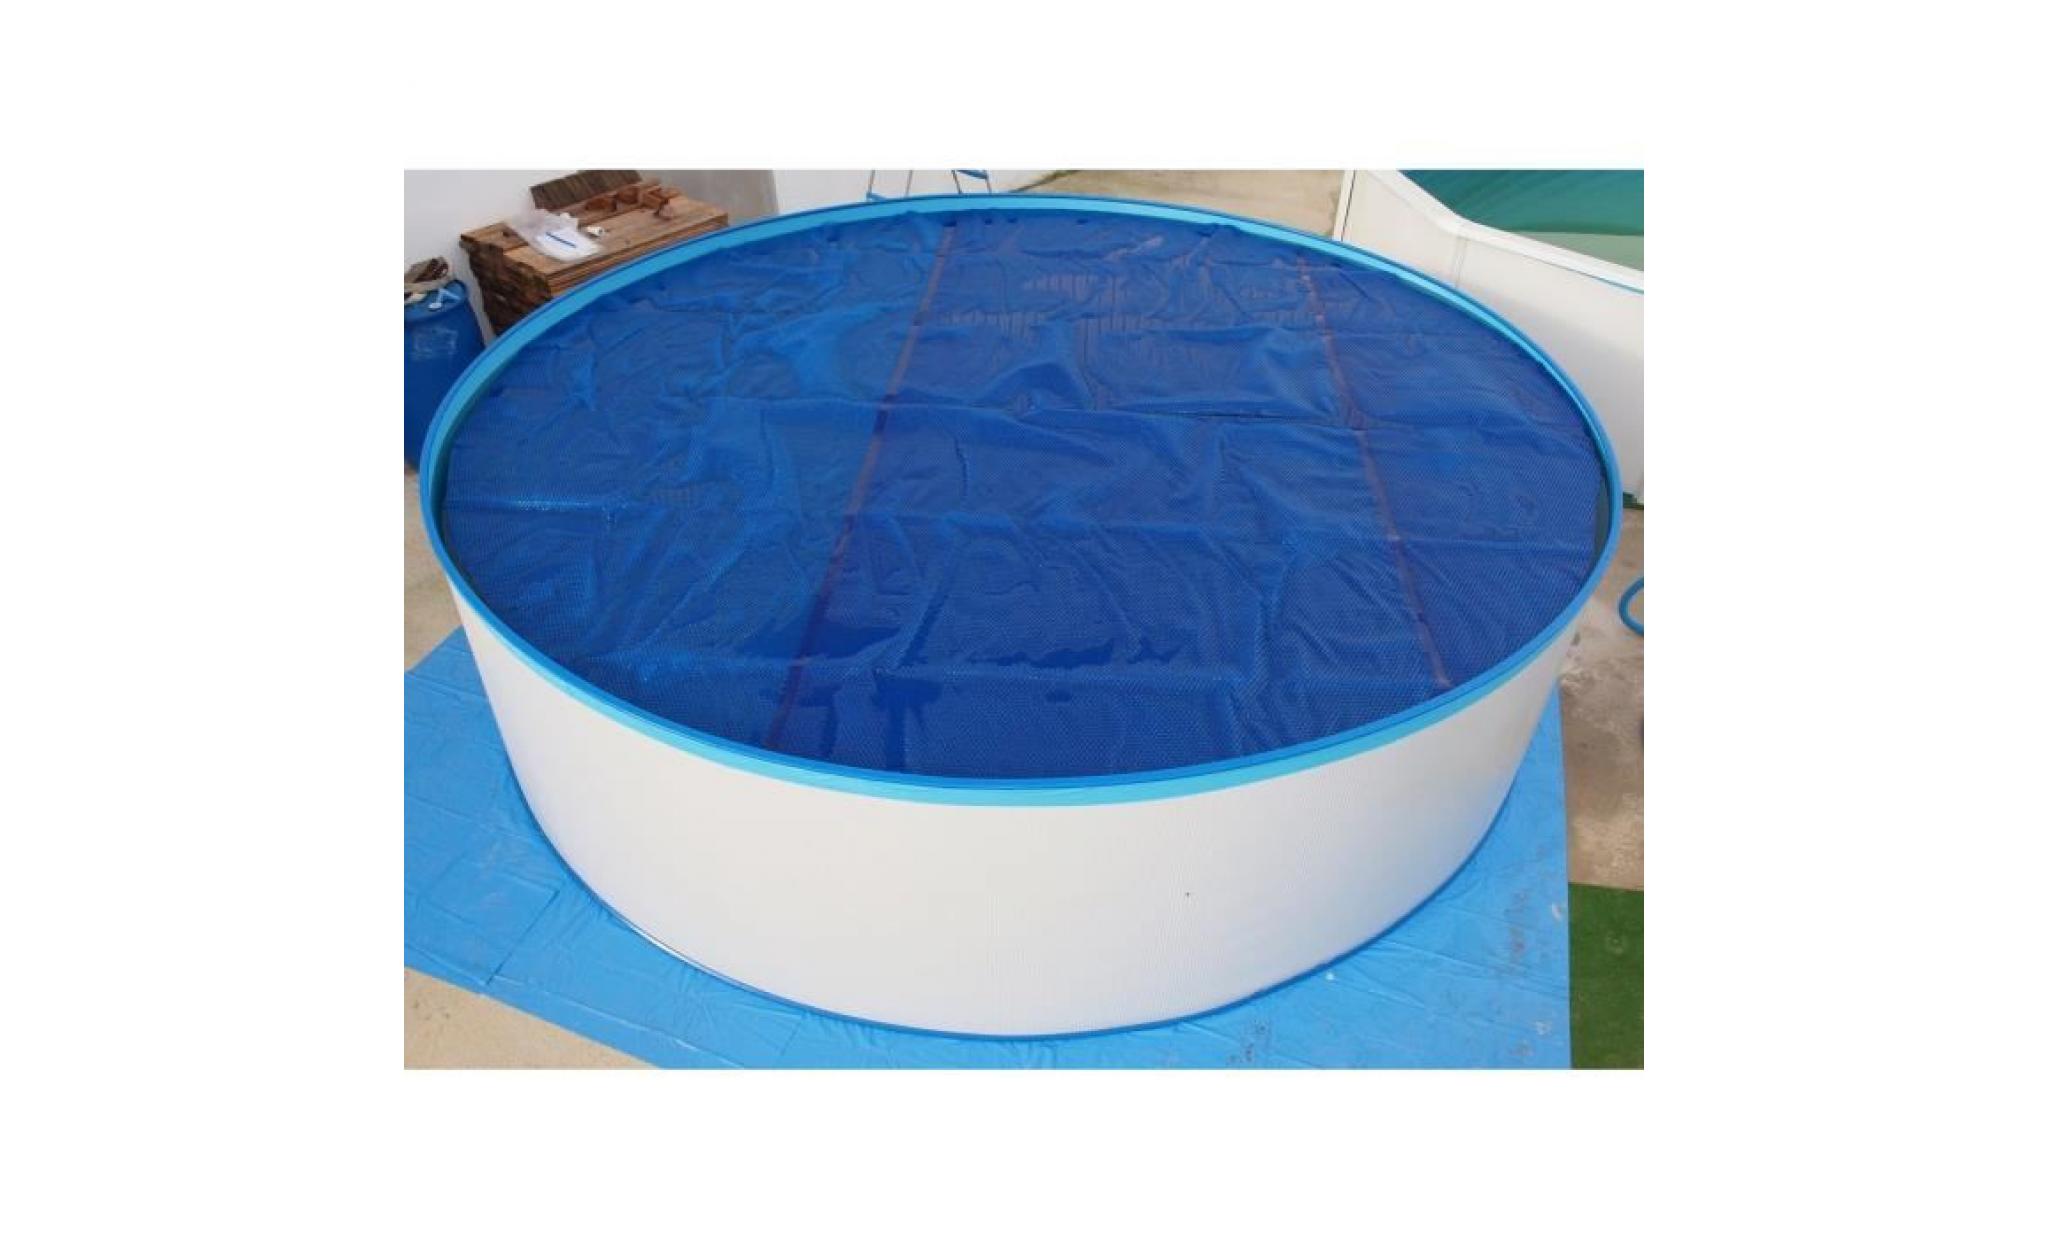 http://www.coindujardin.com/images/produits/hd/torrente-bache-isotherme-pour-piscine-230cm-bleu-3.jpg